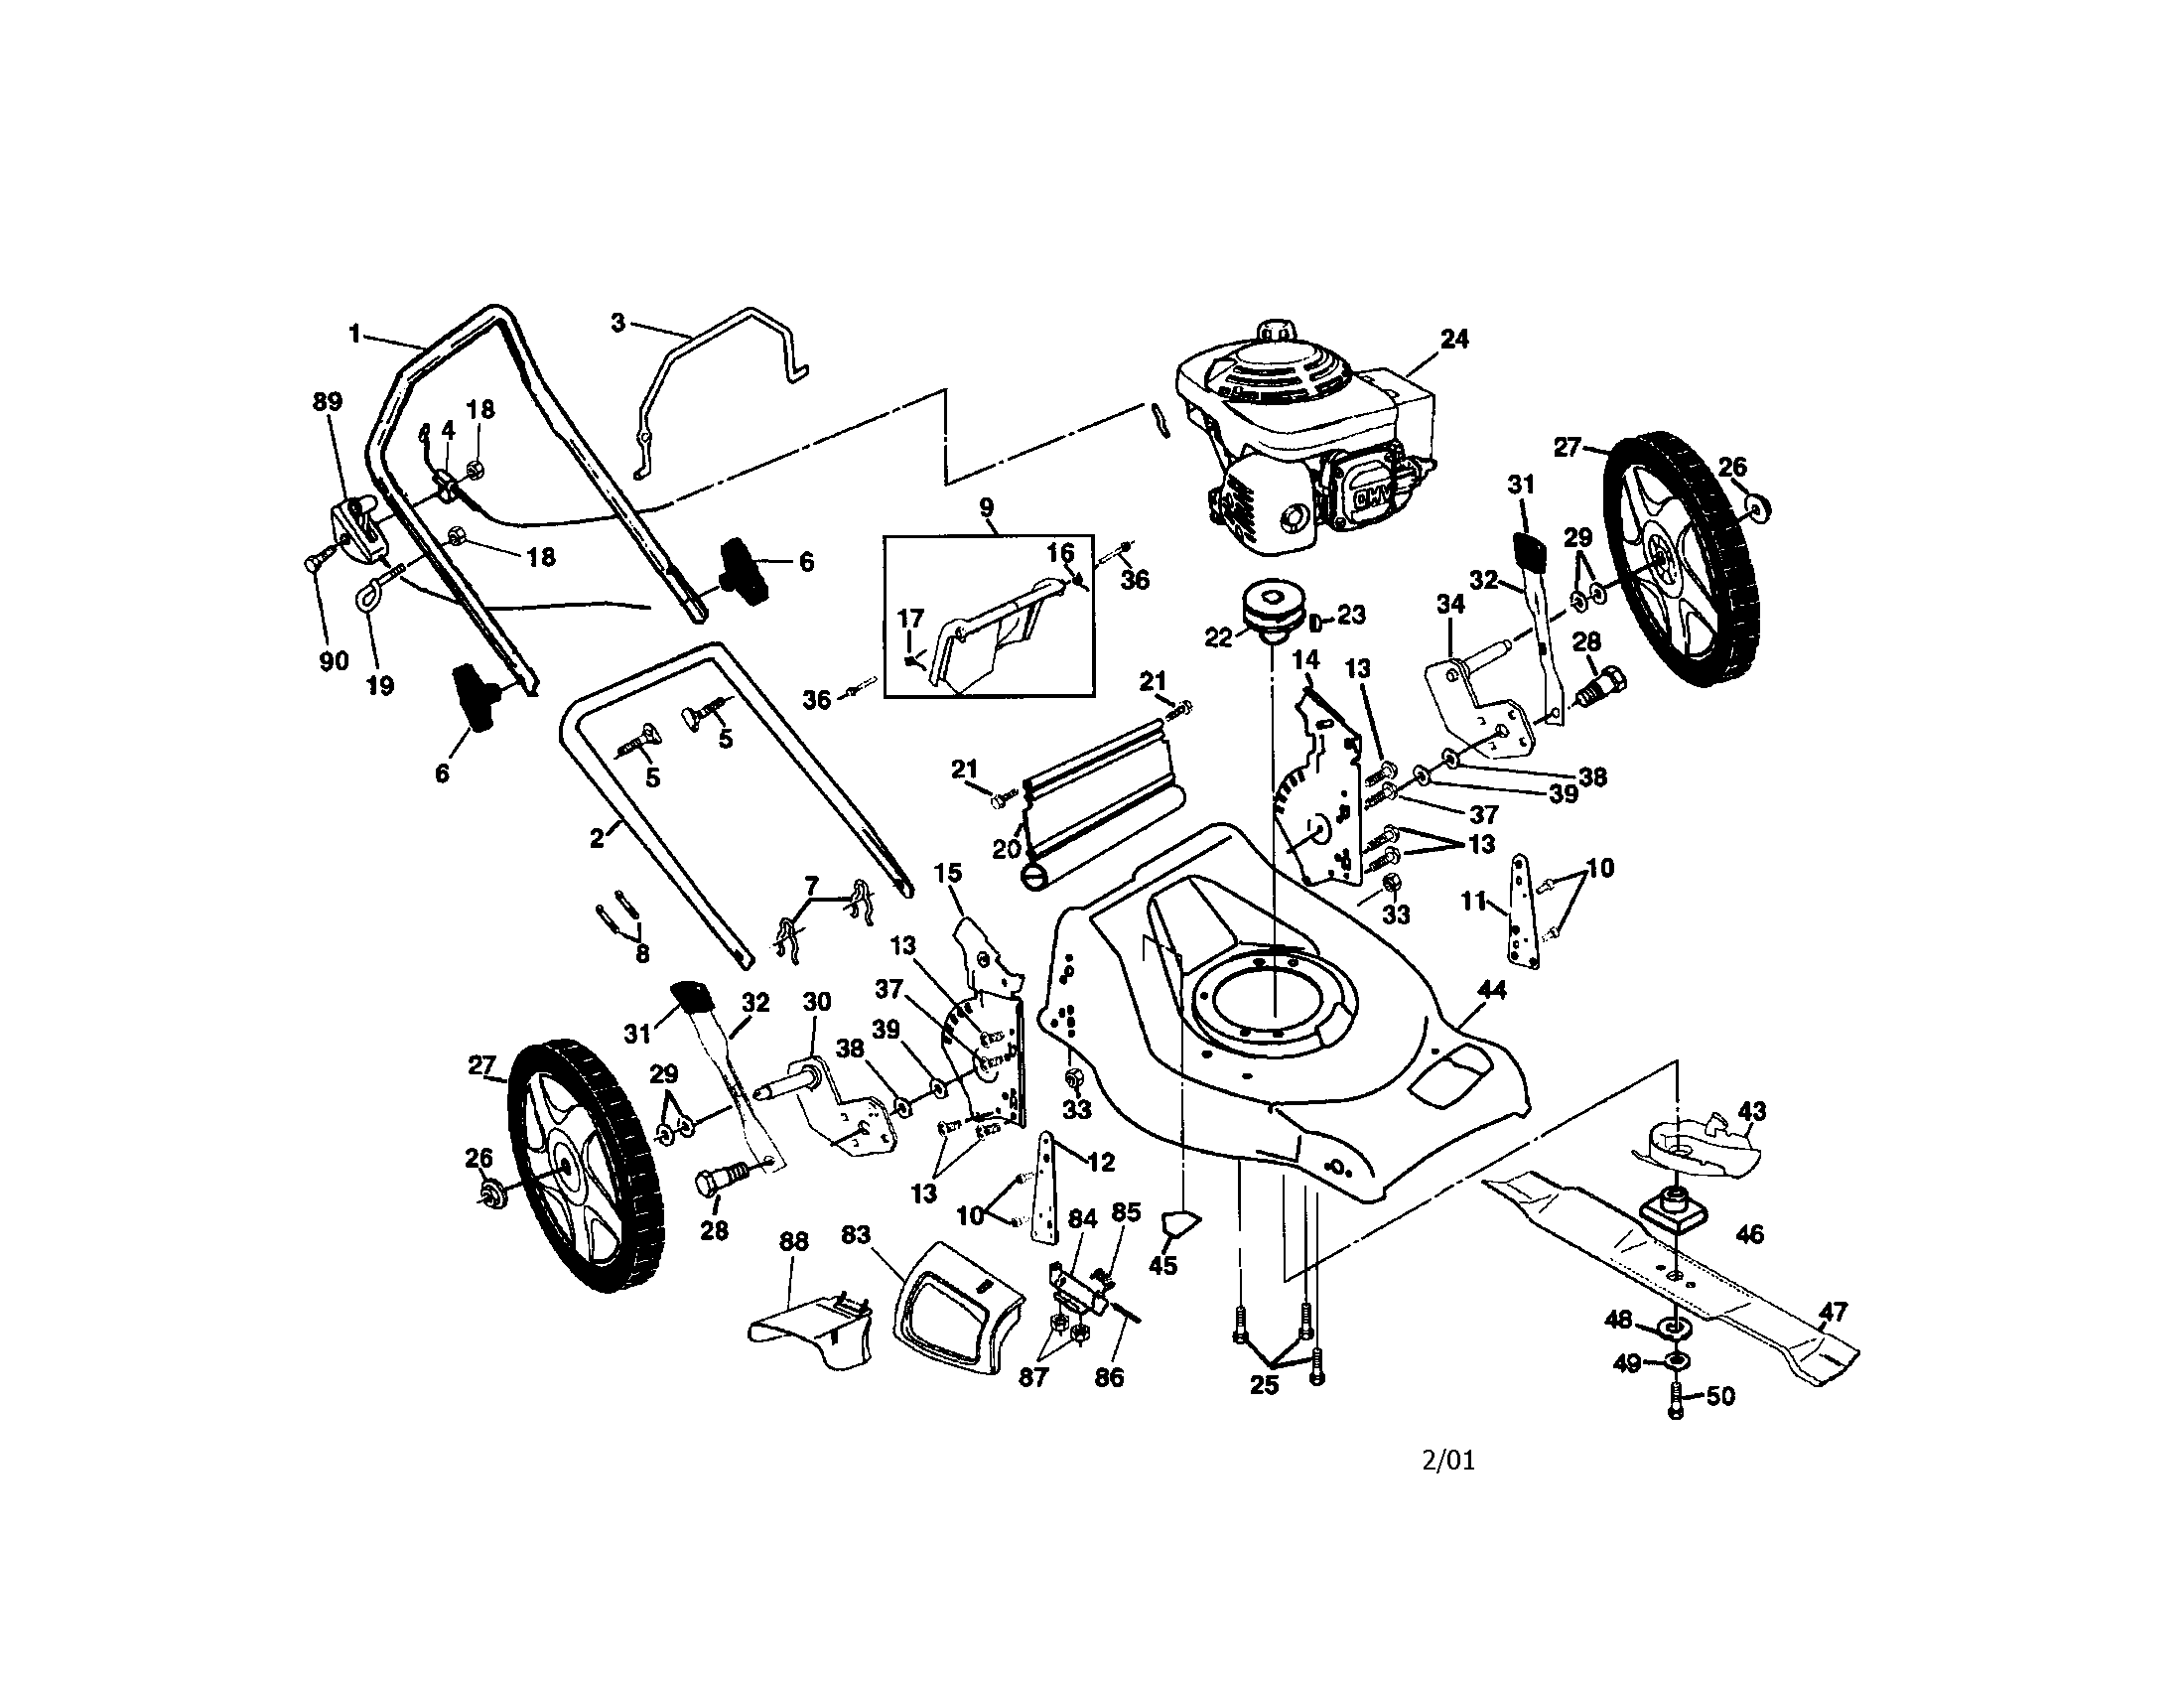 Honda Hrr2168vka Lawn Mower Repair Manual